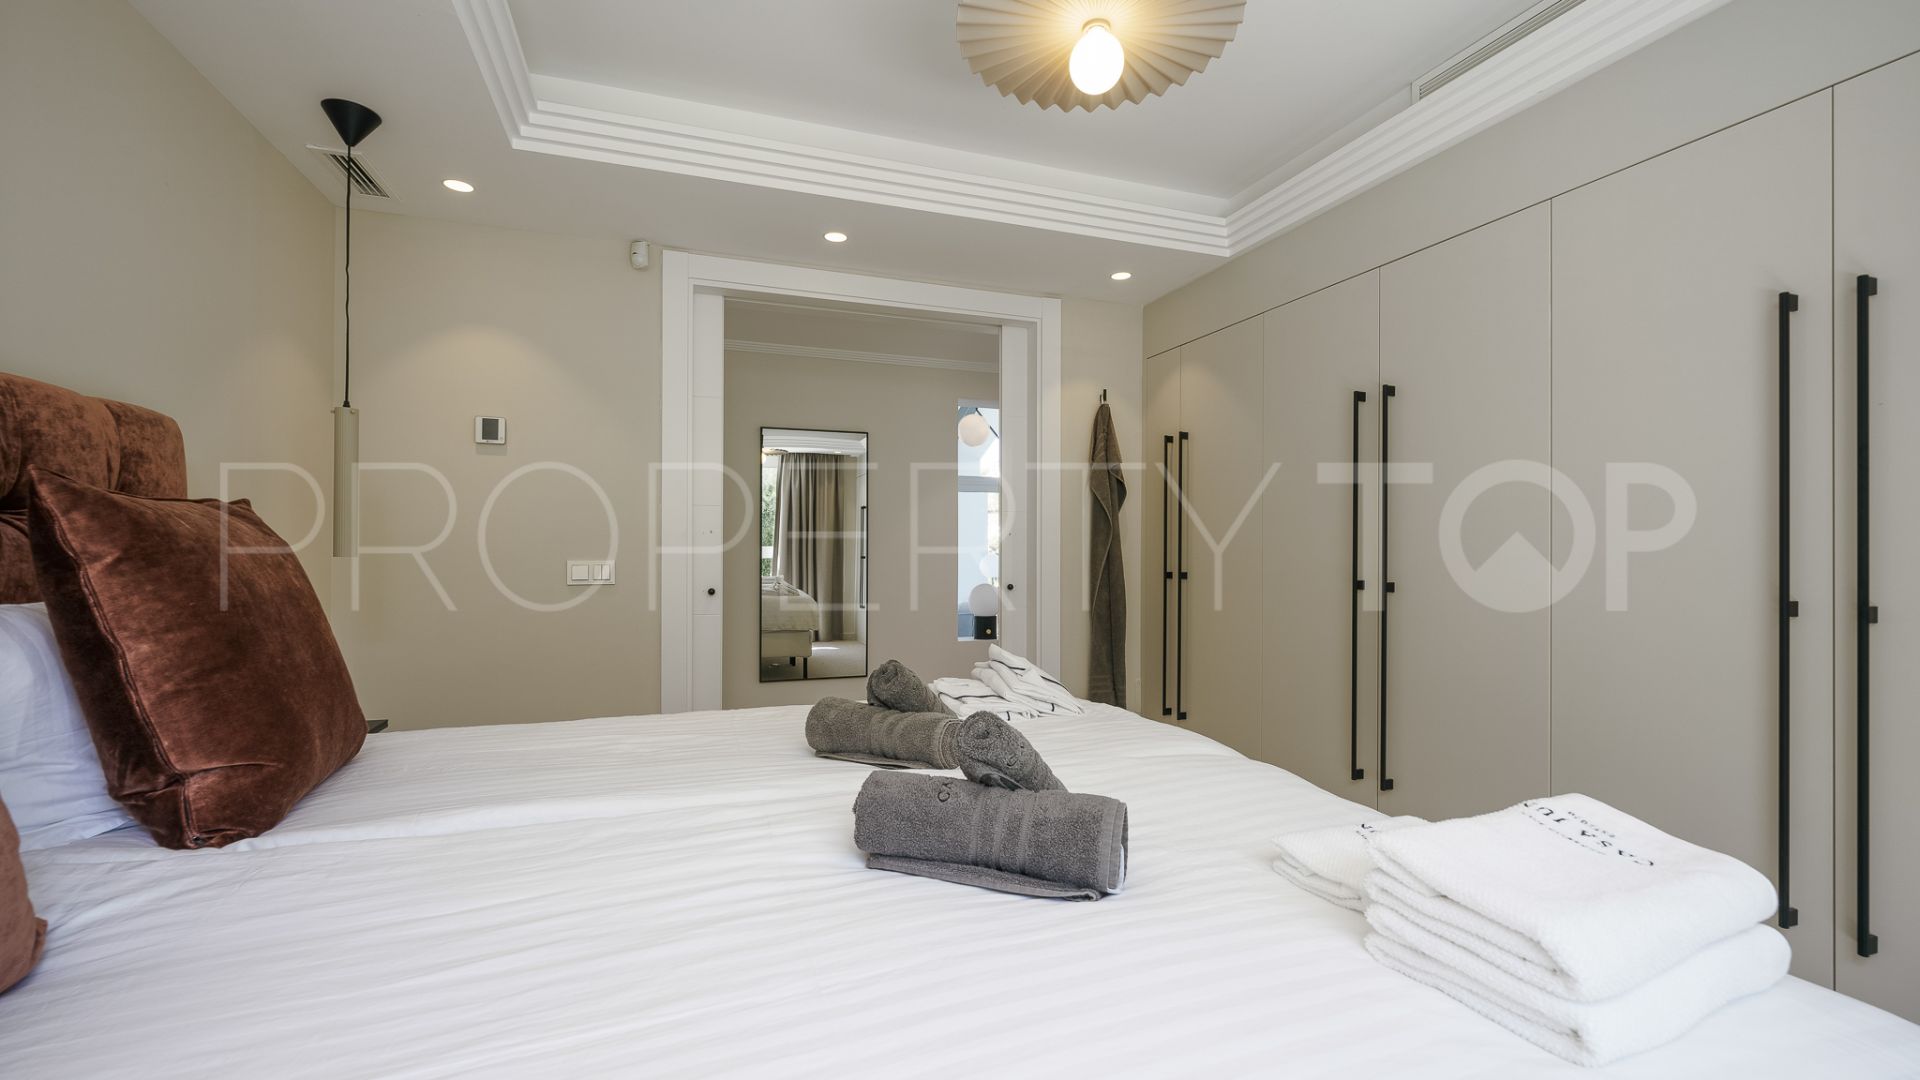 For sale villa in Vega del Colorado with 7 bedrooms